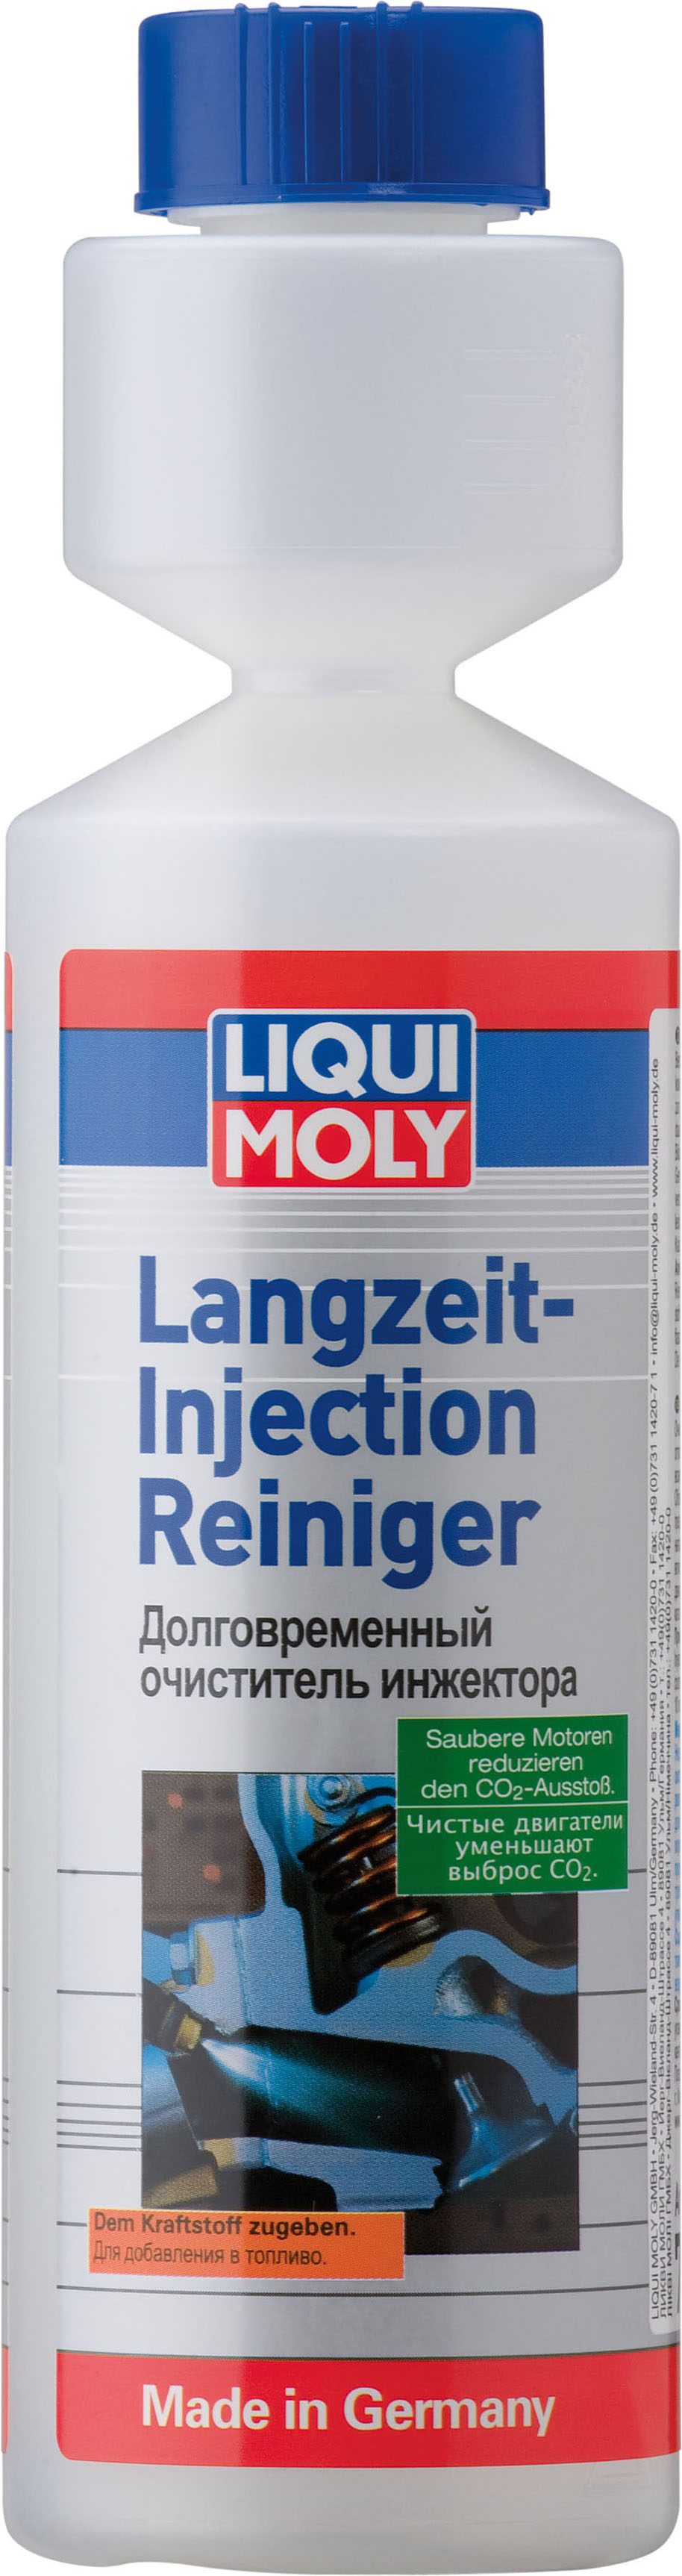 Долговременный очиститель инжектора LIQUI MOLY Langzeit Injection Reiniger (0,25 литра)